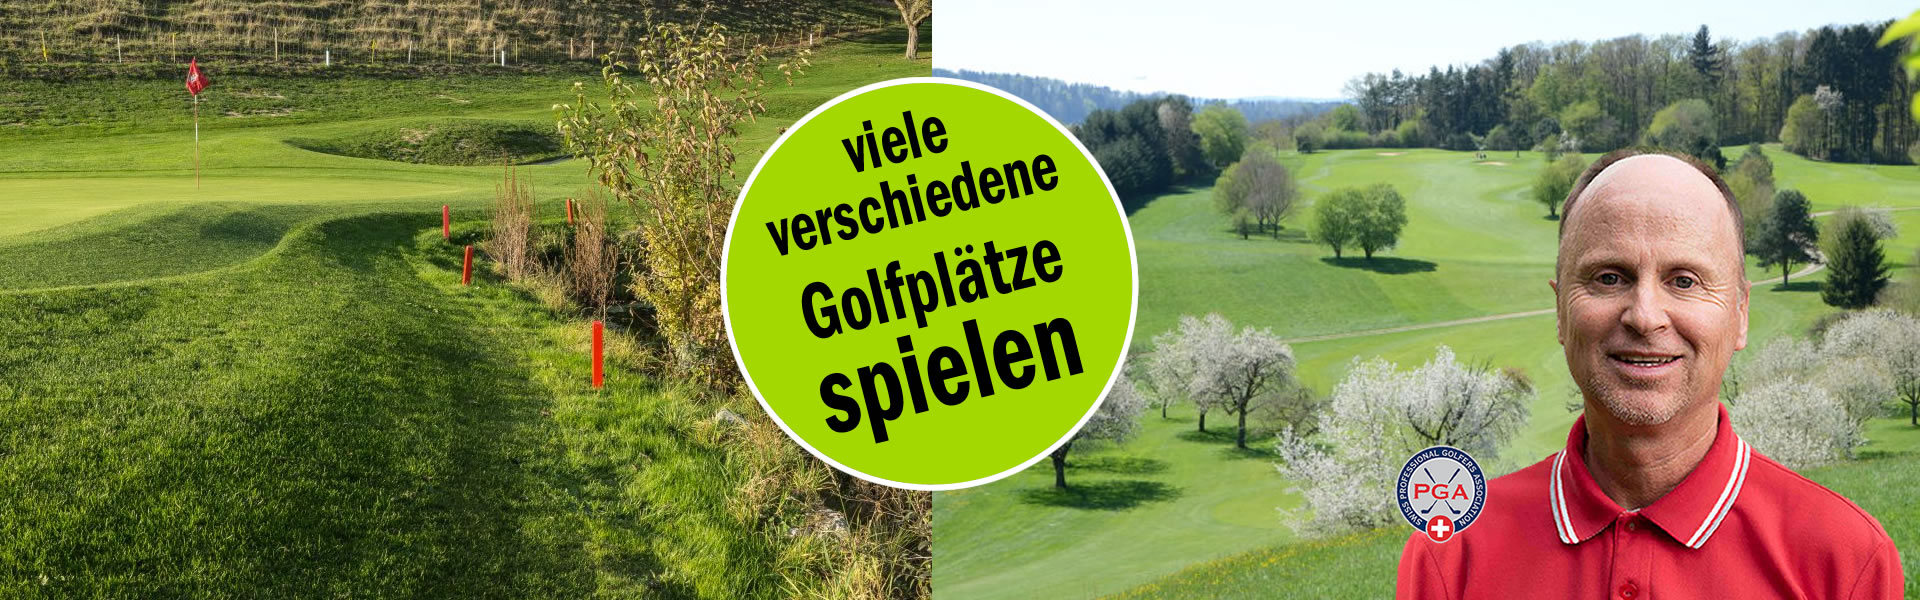 Golf-Kurz-Trip-Reisen-Golfferien-Kurzreisen-Golf-Pro-Lehrer-Golfstunden-Zuerich-Thierry-Rombaldi-02